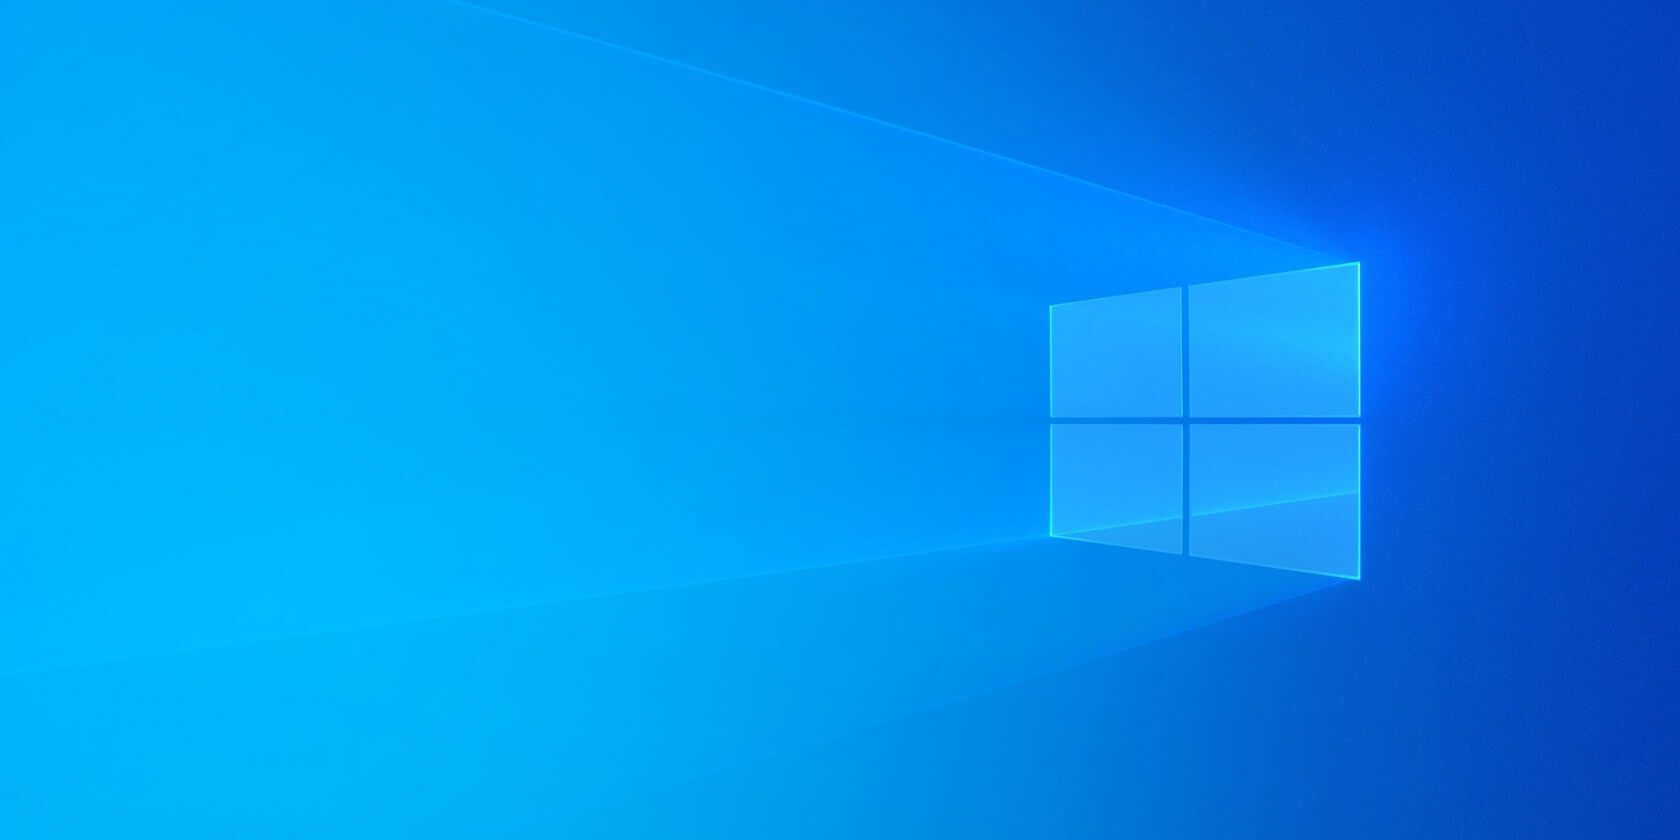 Windows 10'a oyuncular için 'değişken yenileme hızı' ayarı geliyor